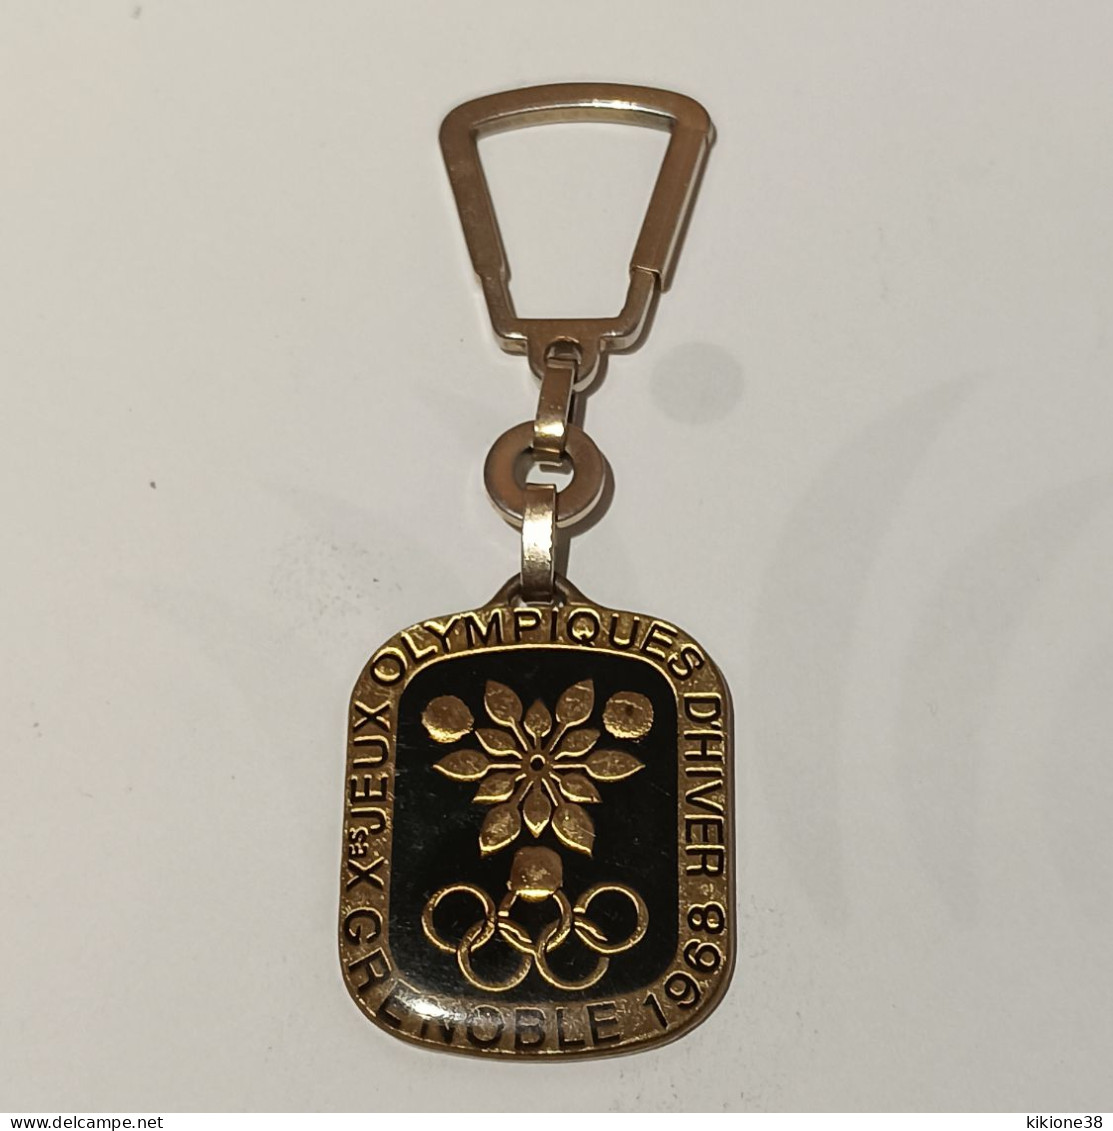 Très Rare Porte Clé Des Jeux Olympiques De Grenoble 68 Fond Noir Sous Résine. Objet Souvenir, Médaille, Badge, Pin's. - Habillement, Souvenirs & Autres